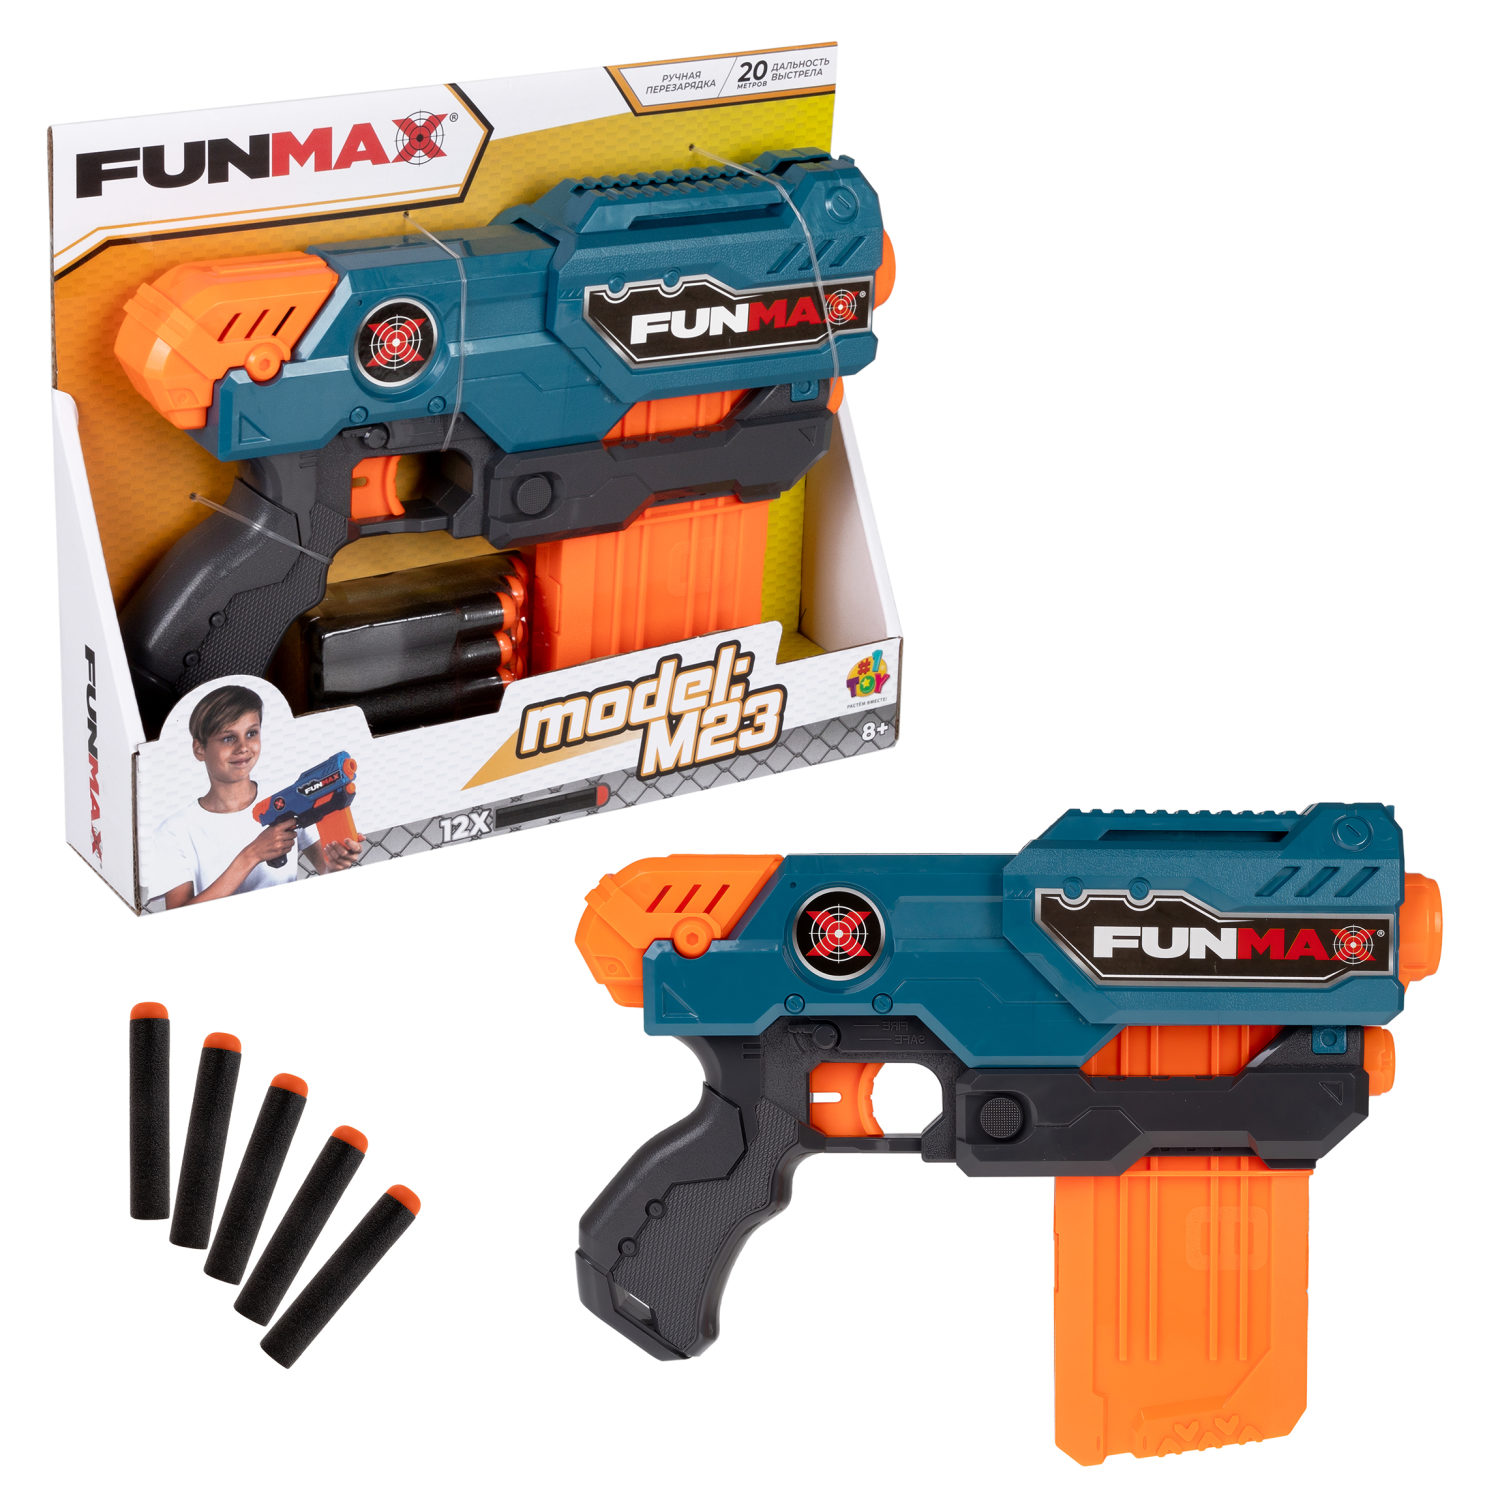 Бластер игрушечный 1toy Funmax M23 механич, обойма на 10 выстрелов, 12 EVA снарядов набор пуль для игрушечного бластера eva снарядов 1toy funmax 24 шт блистер